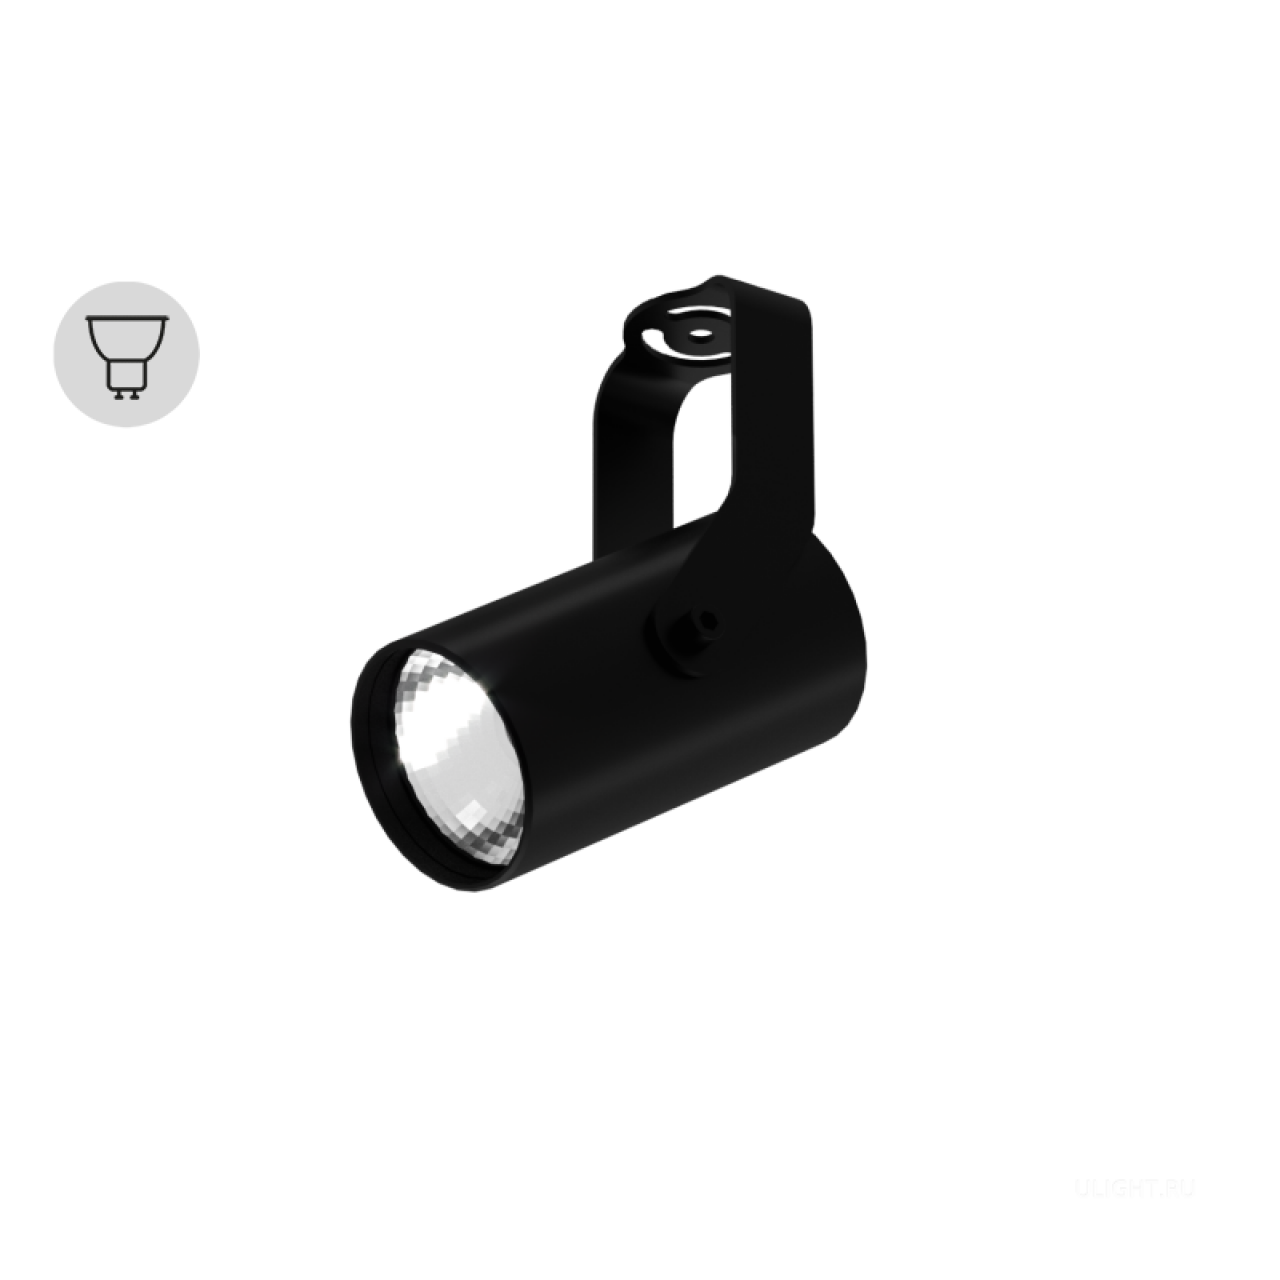 Цилиндрический корпус диаметром 55 мм для ламп с цоколем GU10. 
Светильник идеально подойдет для подсветки прикроватной тумбочки или отдельных предметов интерьера.